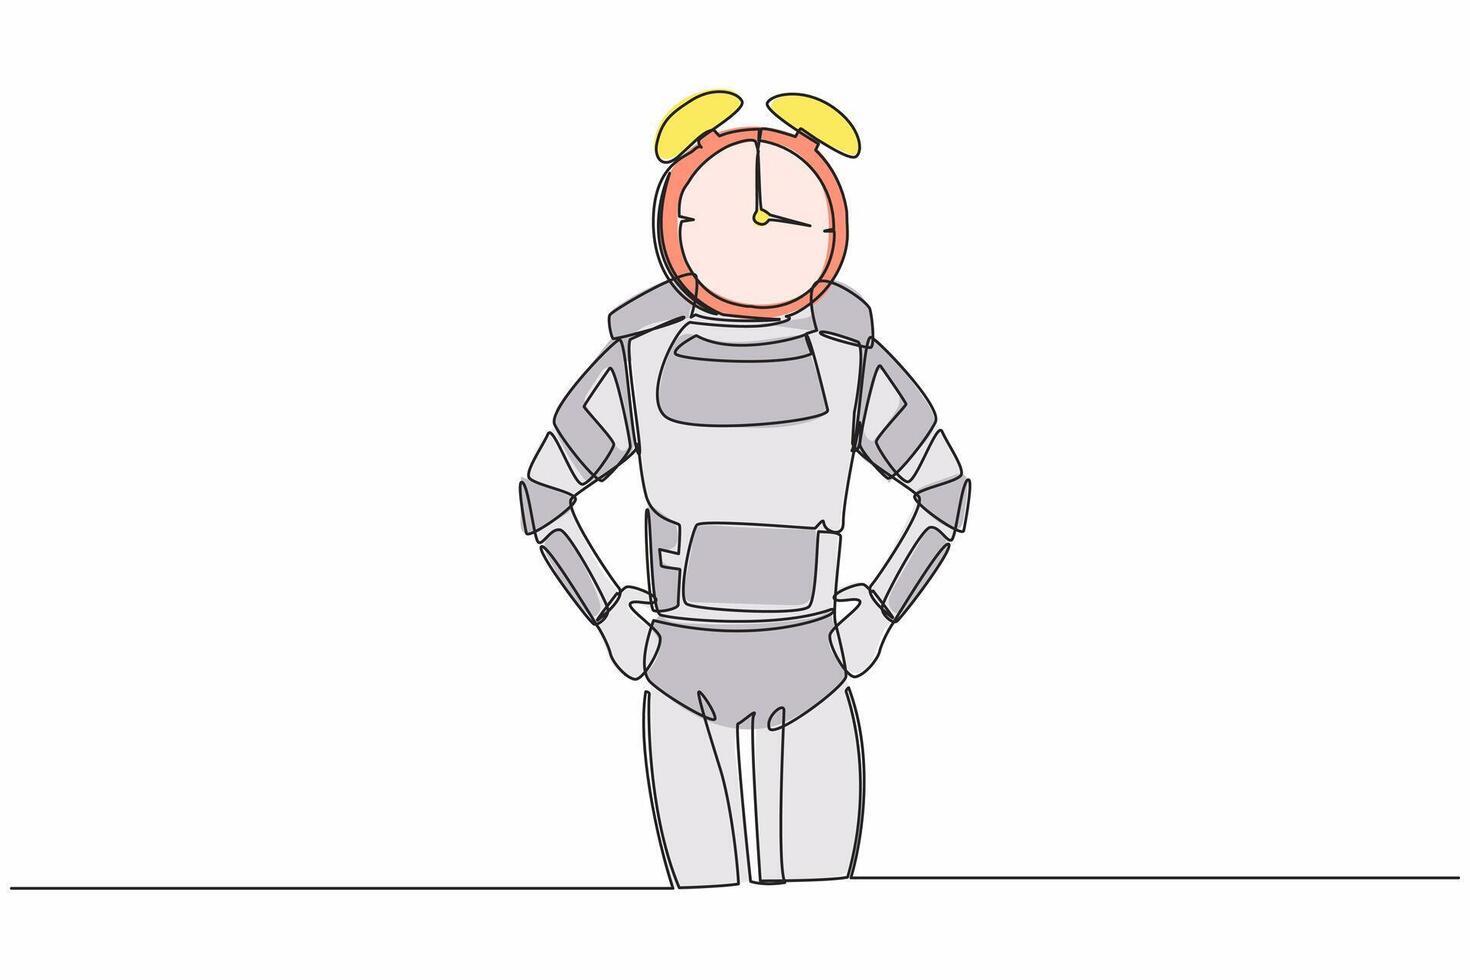 kontinuerlig ett linje teckning av ung astronaut med larm klocka istället av huvud. spaceman påfrestning i rymdskepp utforskning projekt. kosmonaut yttre Plats. enda linje grafisk design vektor illustration